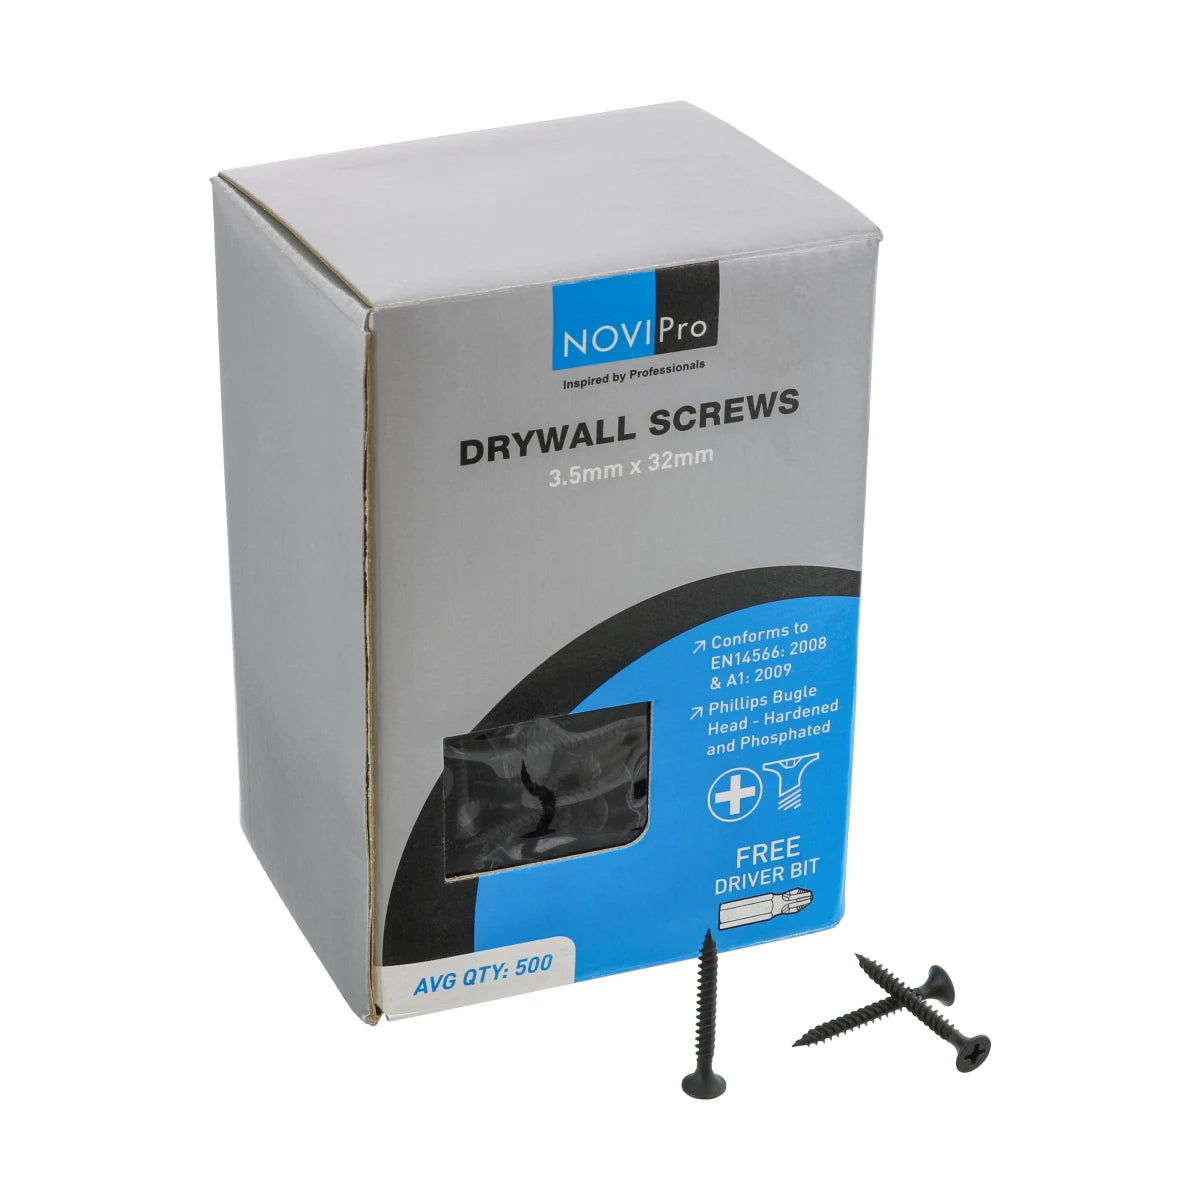 NOVIPro Drywall Screws 3.5 x 32mm Black Phosphate Plated Pack of 500